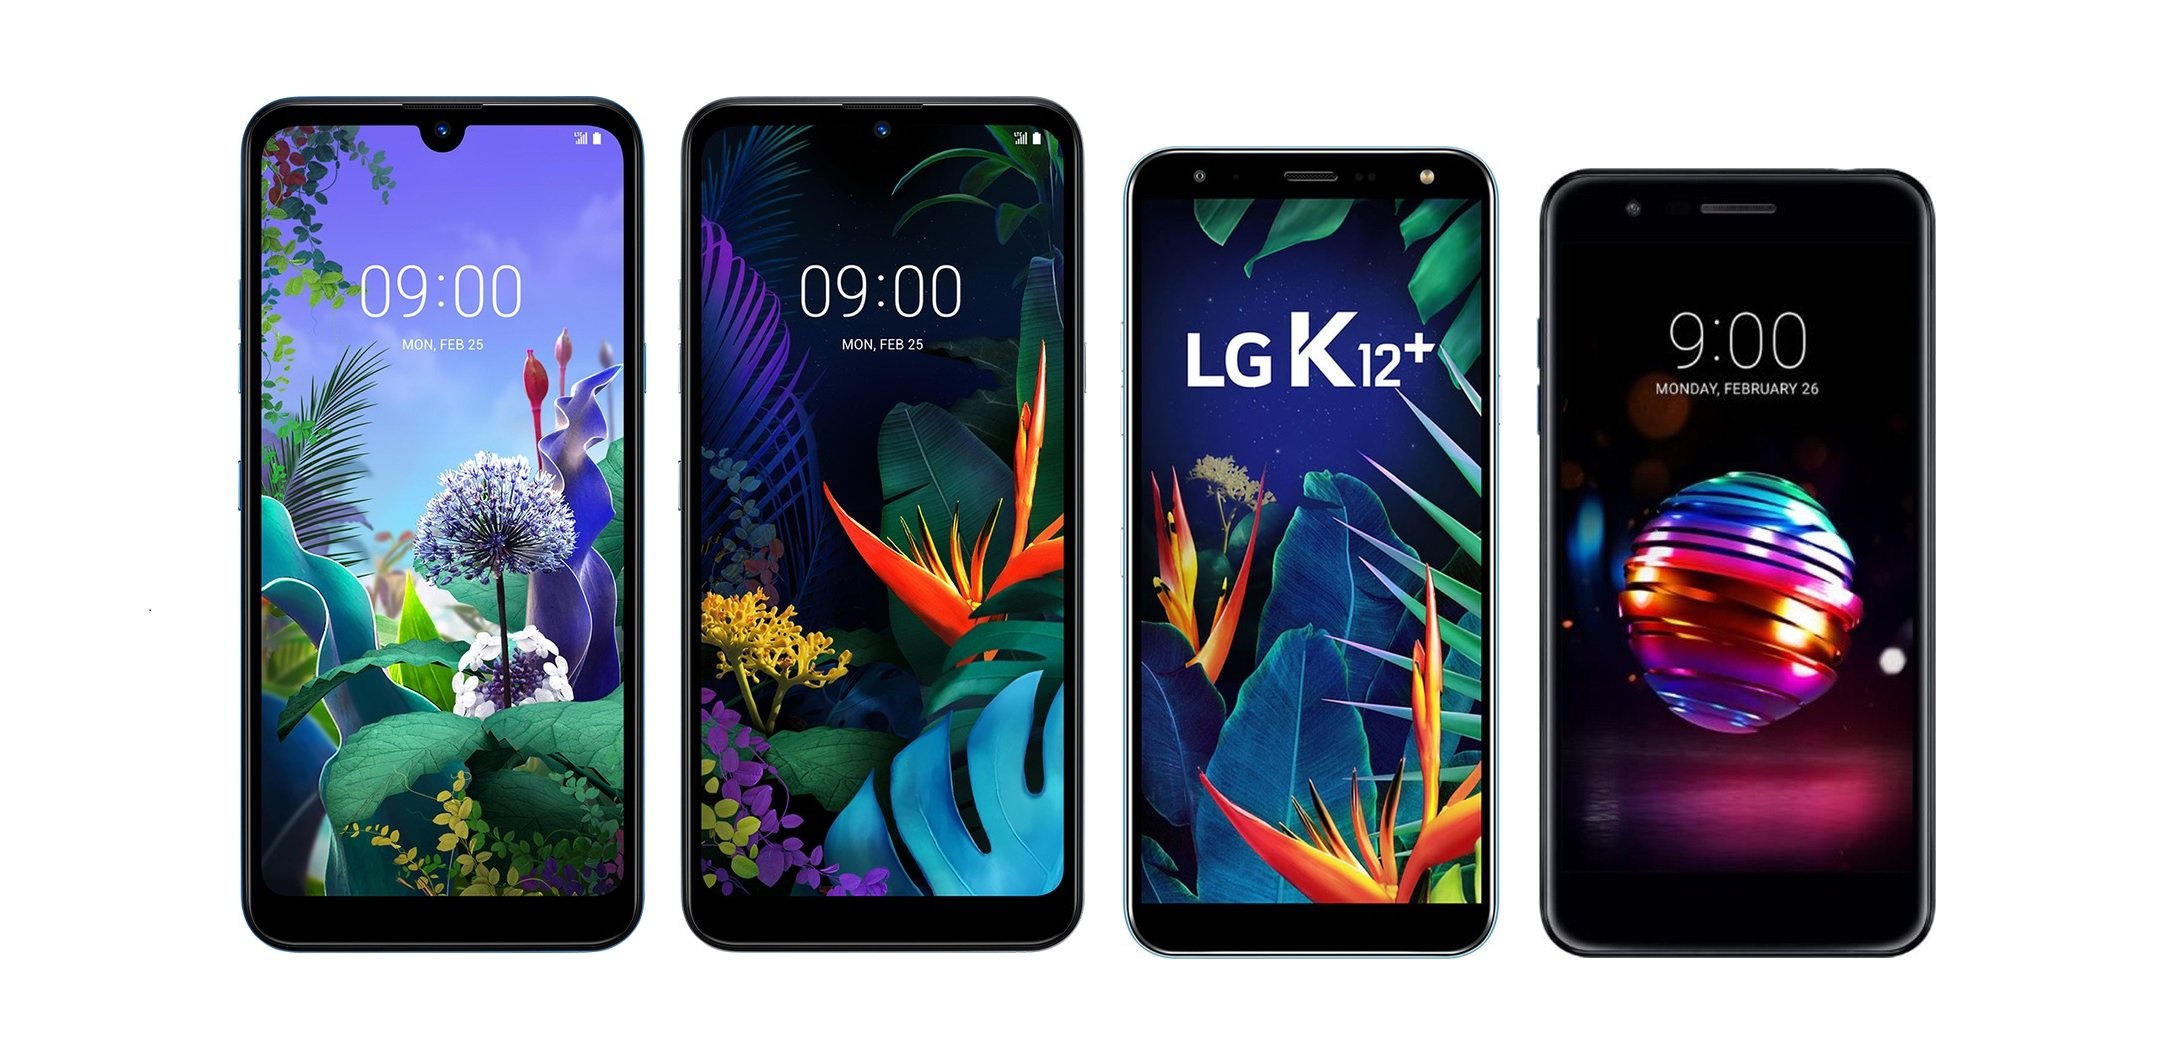 LG Série K ou Samsung Galaxy A e M; qual comprar? – Tecnoblog